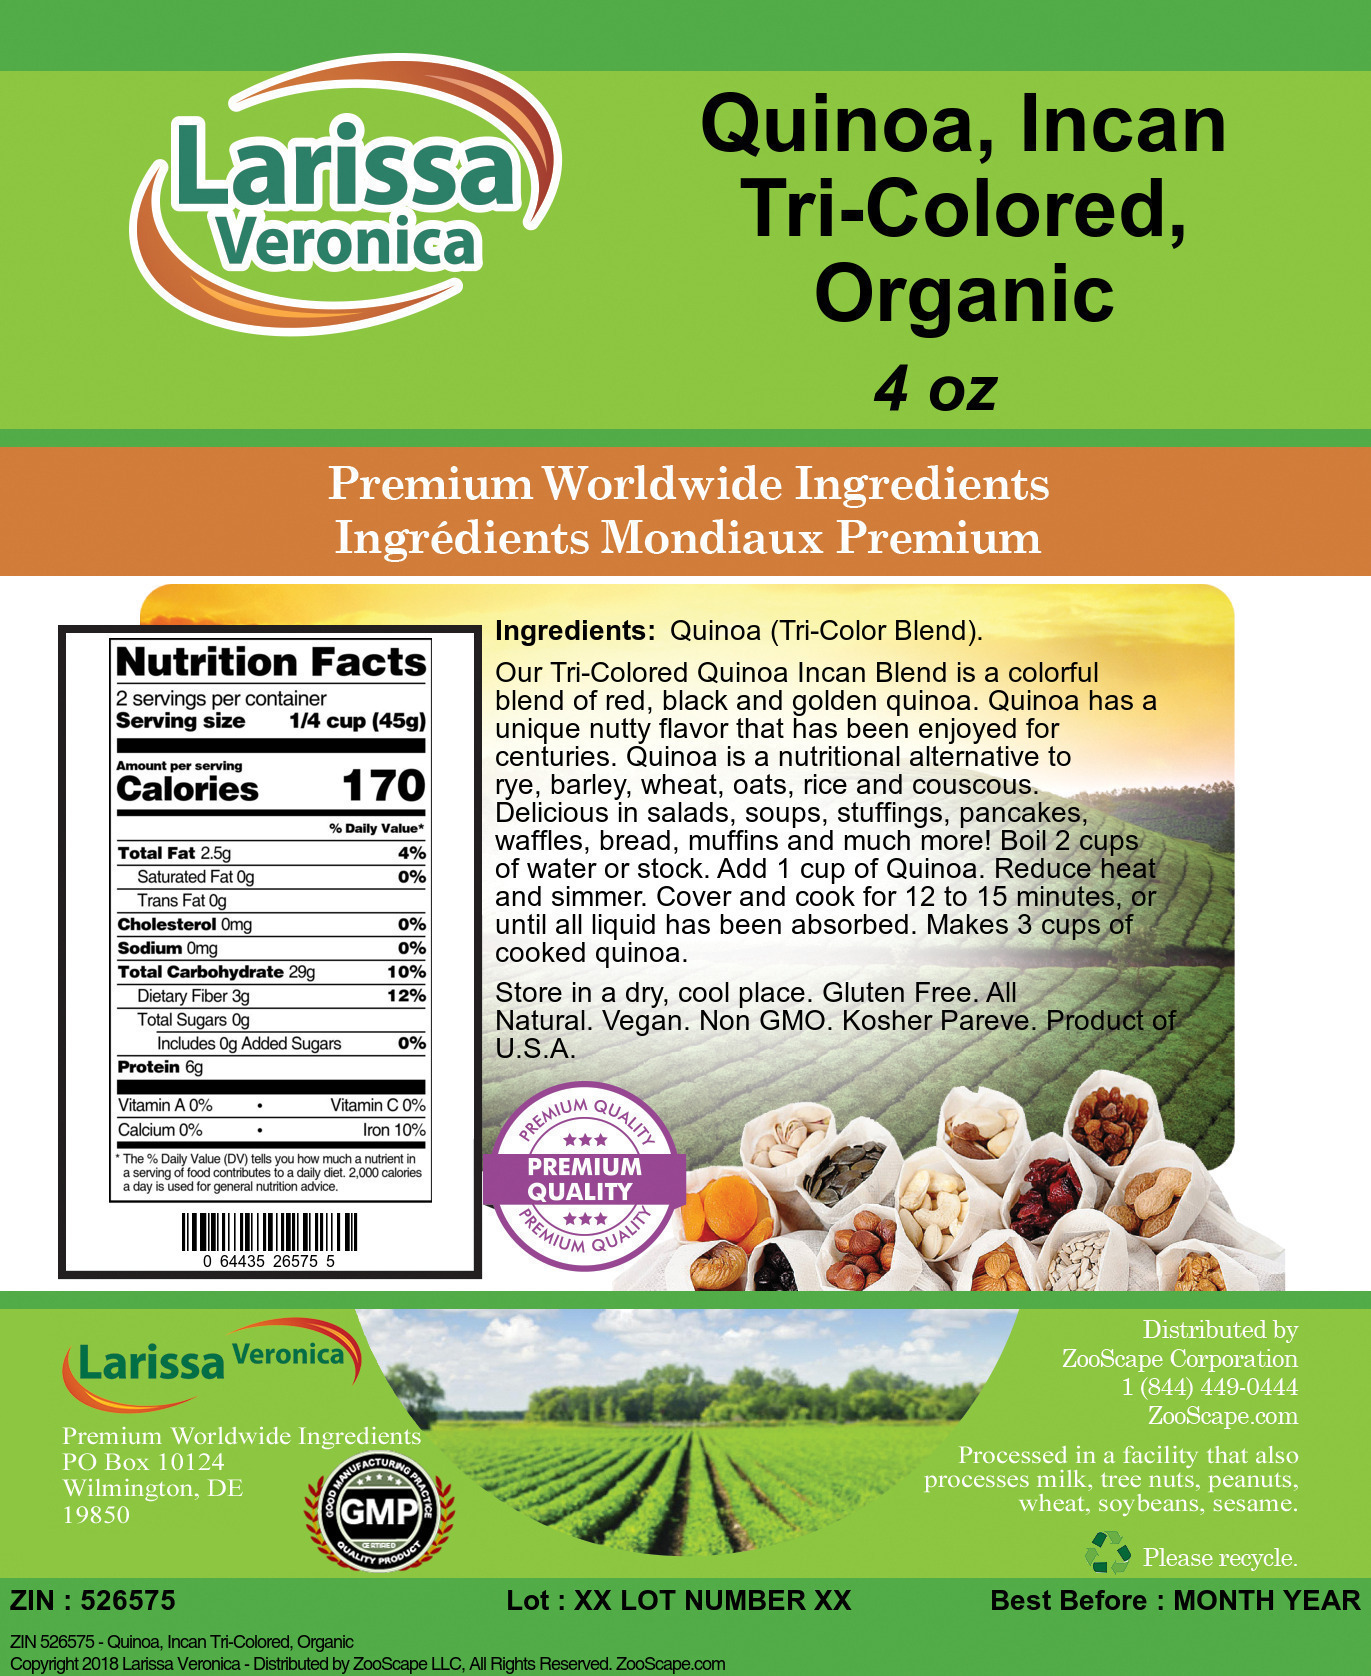 Quinoa, Incan Tri-Colored, Organic - Label